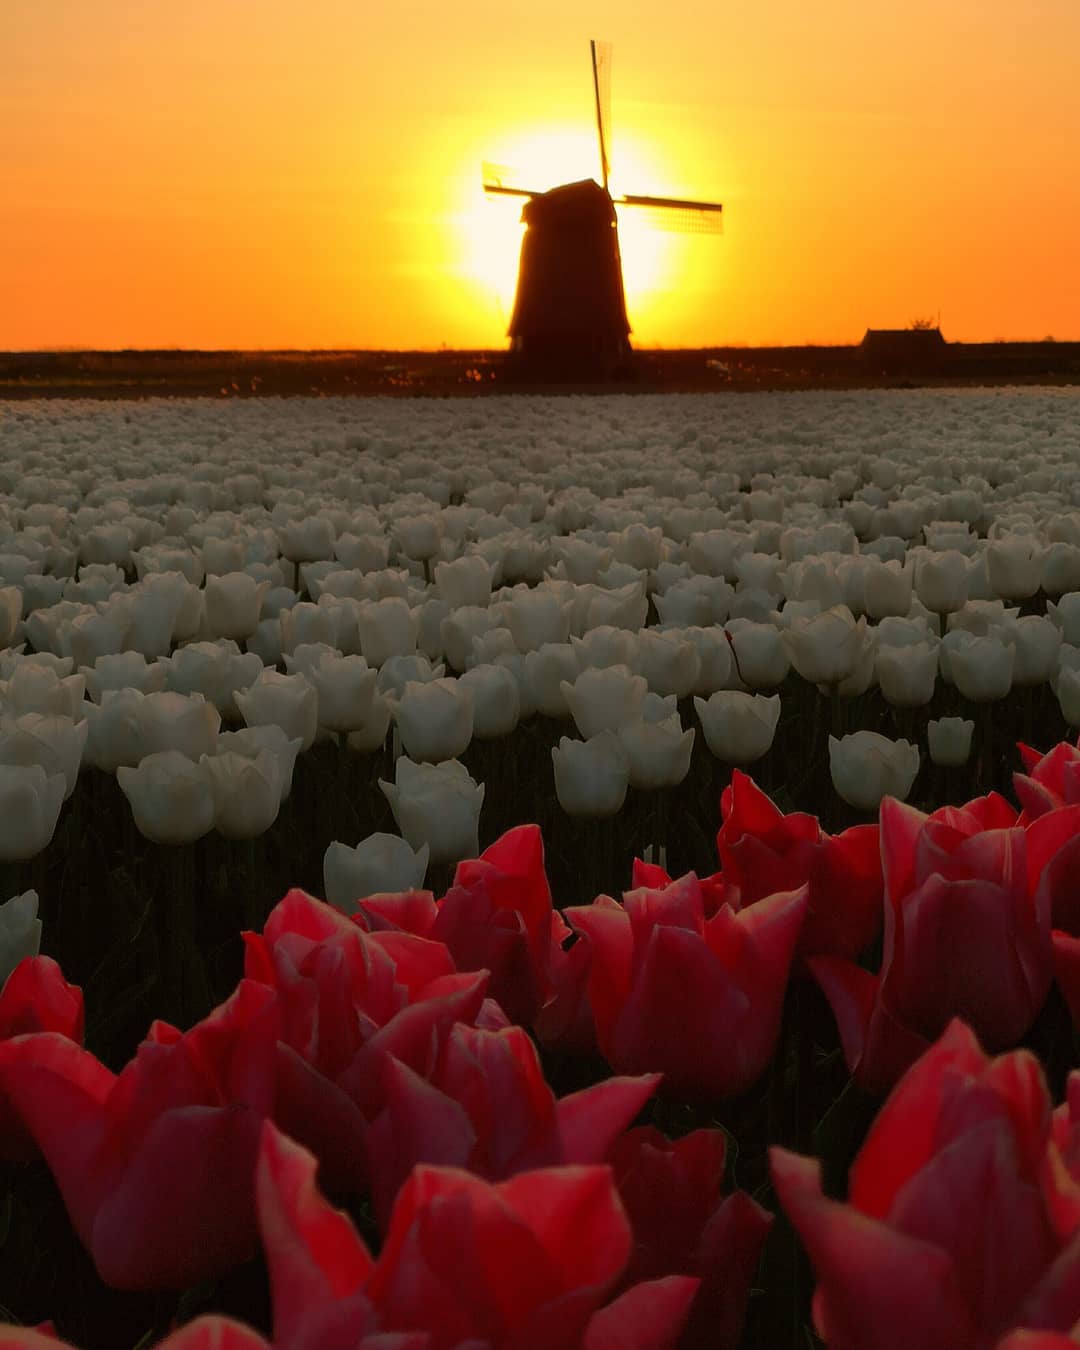 A tulipánok szépsége Dirk Jan Pirsma képeiben